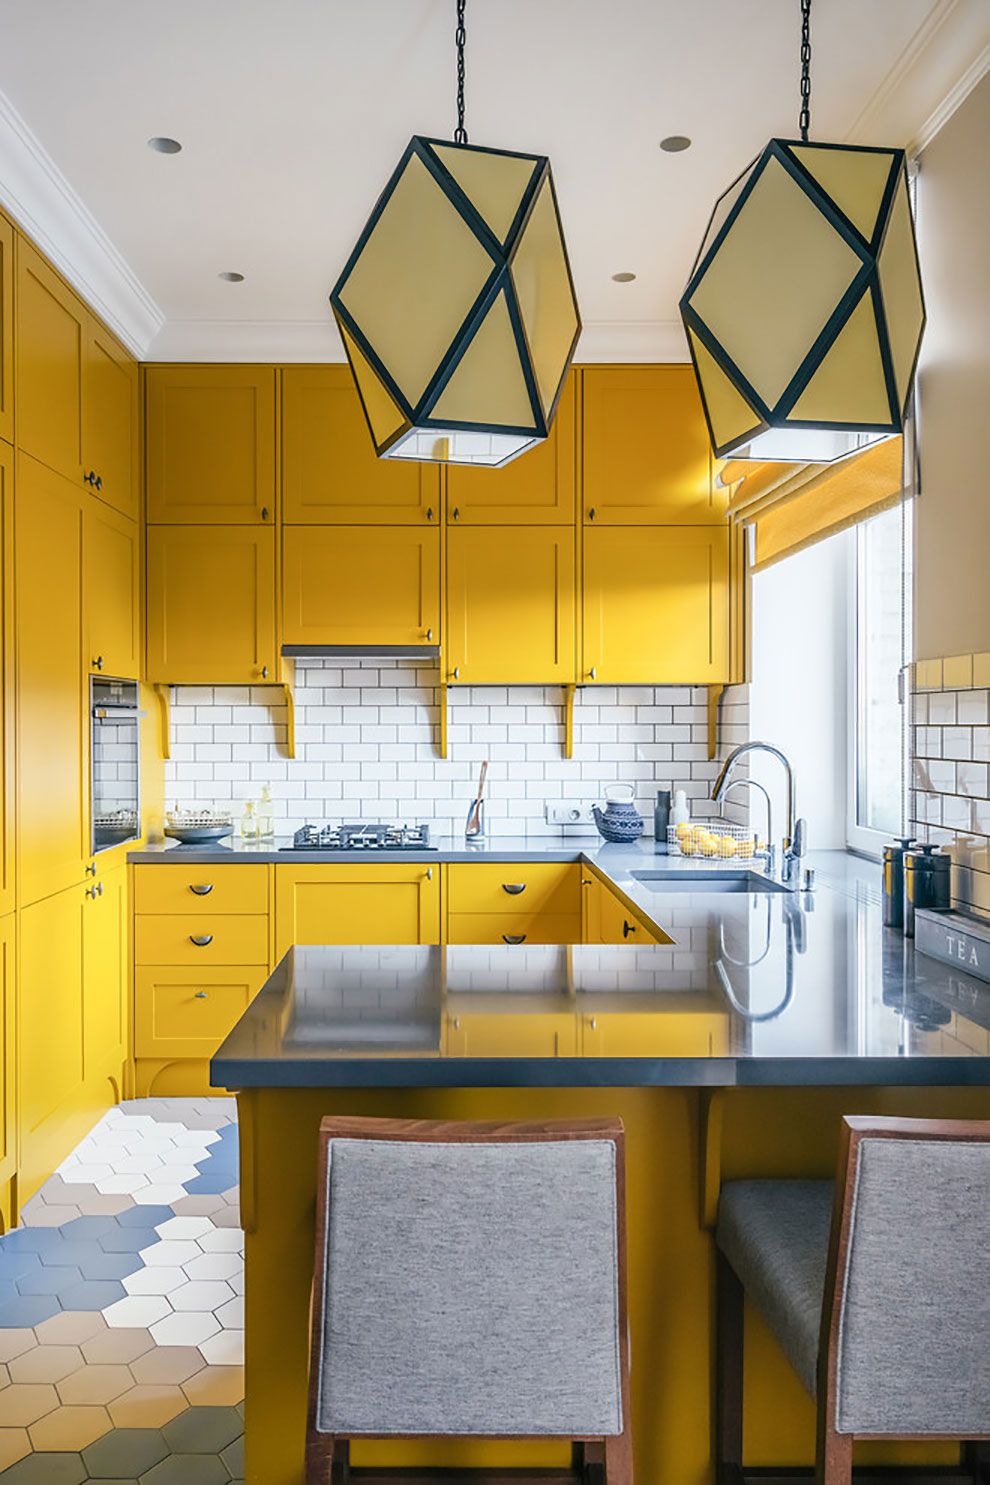 Желтая мебель в помещении П-образной планировки смотрится невероятно привлекательно